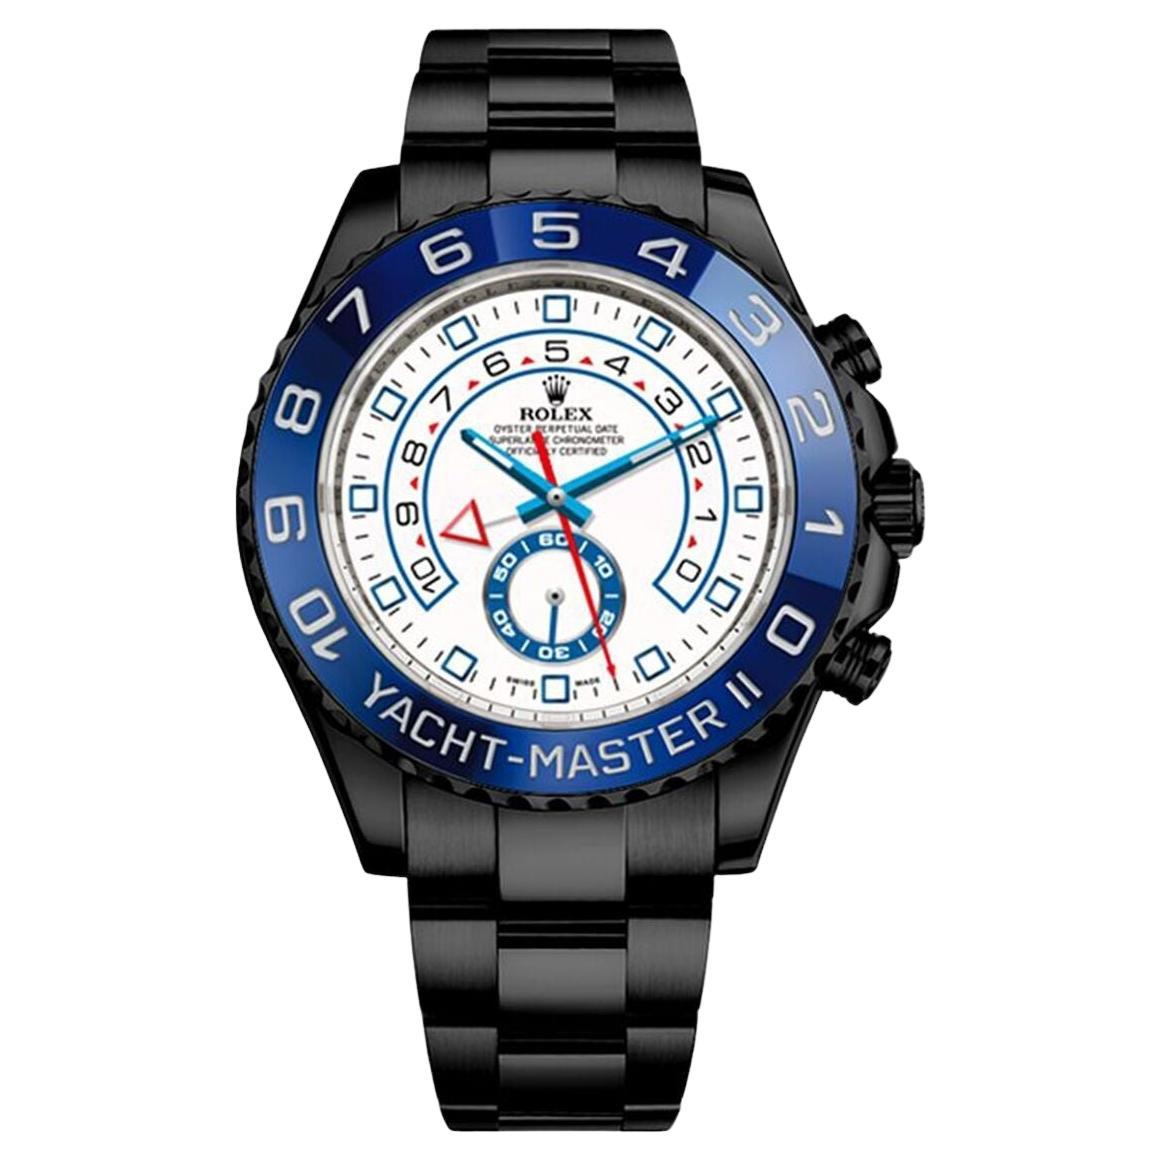 Rolex Yacht-Master II PVD/DLC Uhr aus beschichtetem Edelstahl 116680